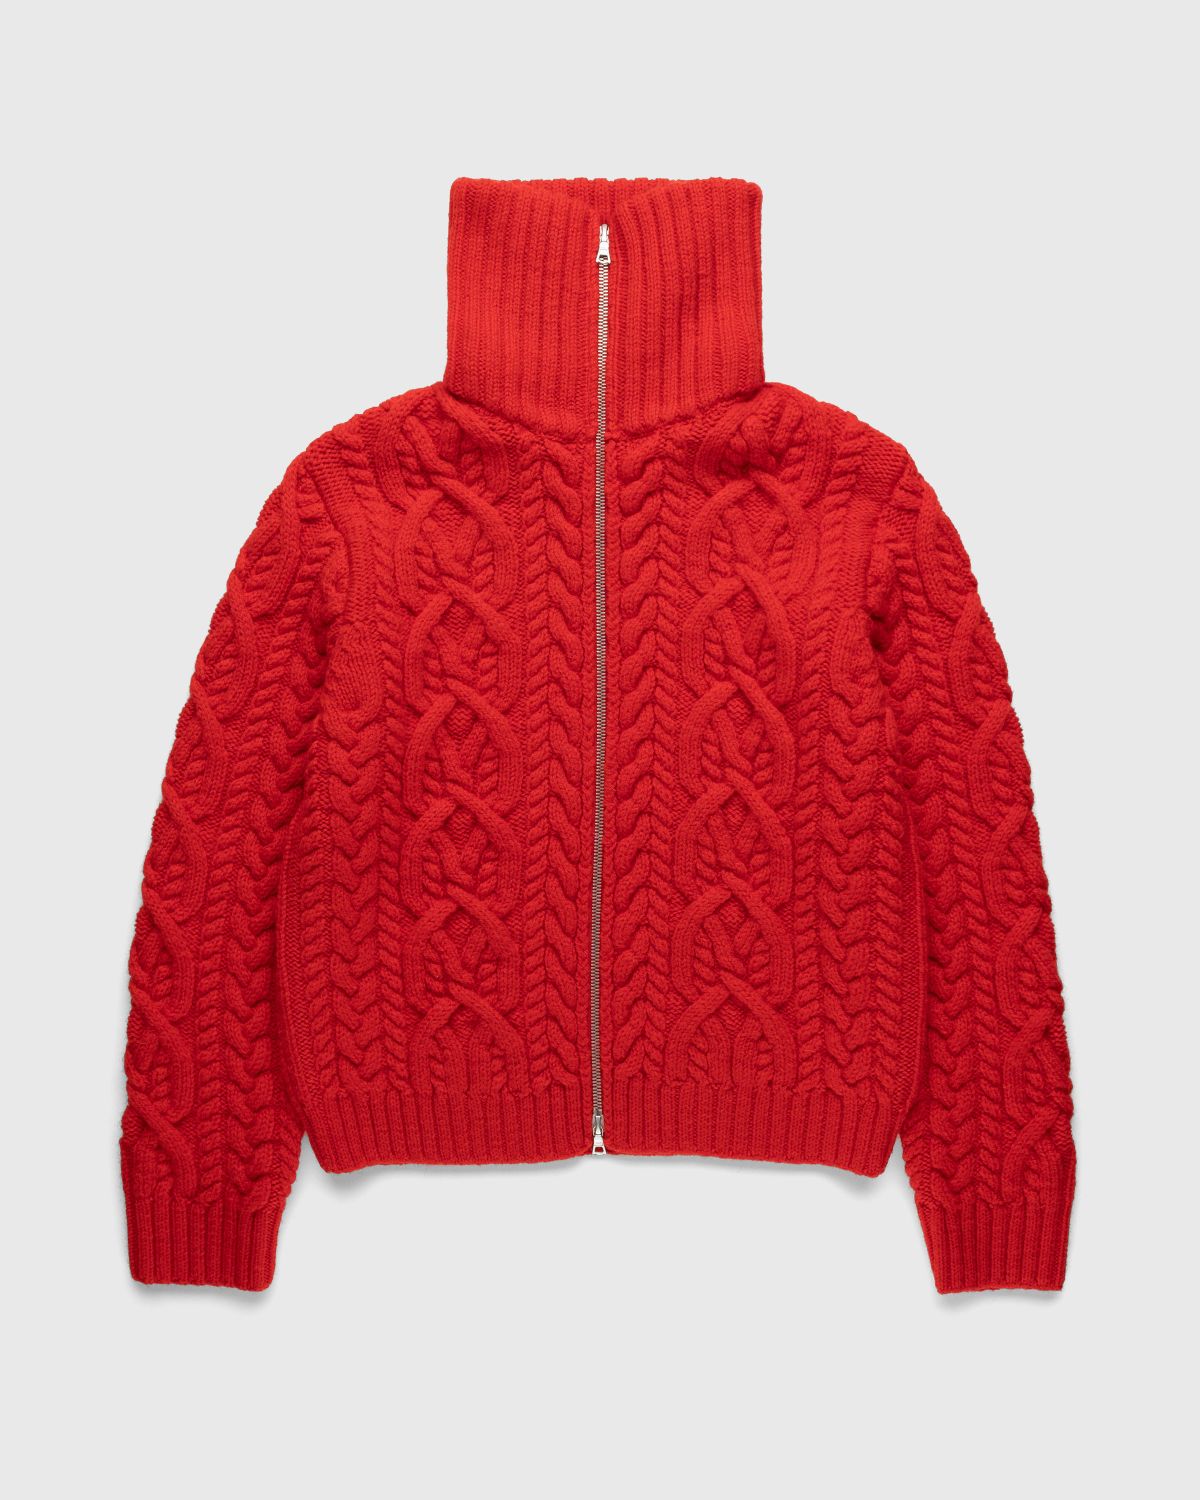 Dries van Noten – Naldo Cardigan Red - Knitwear - Red - Image 1